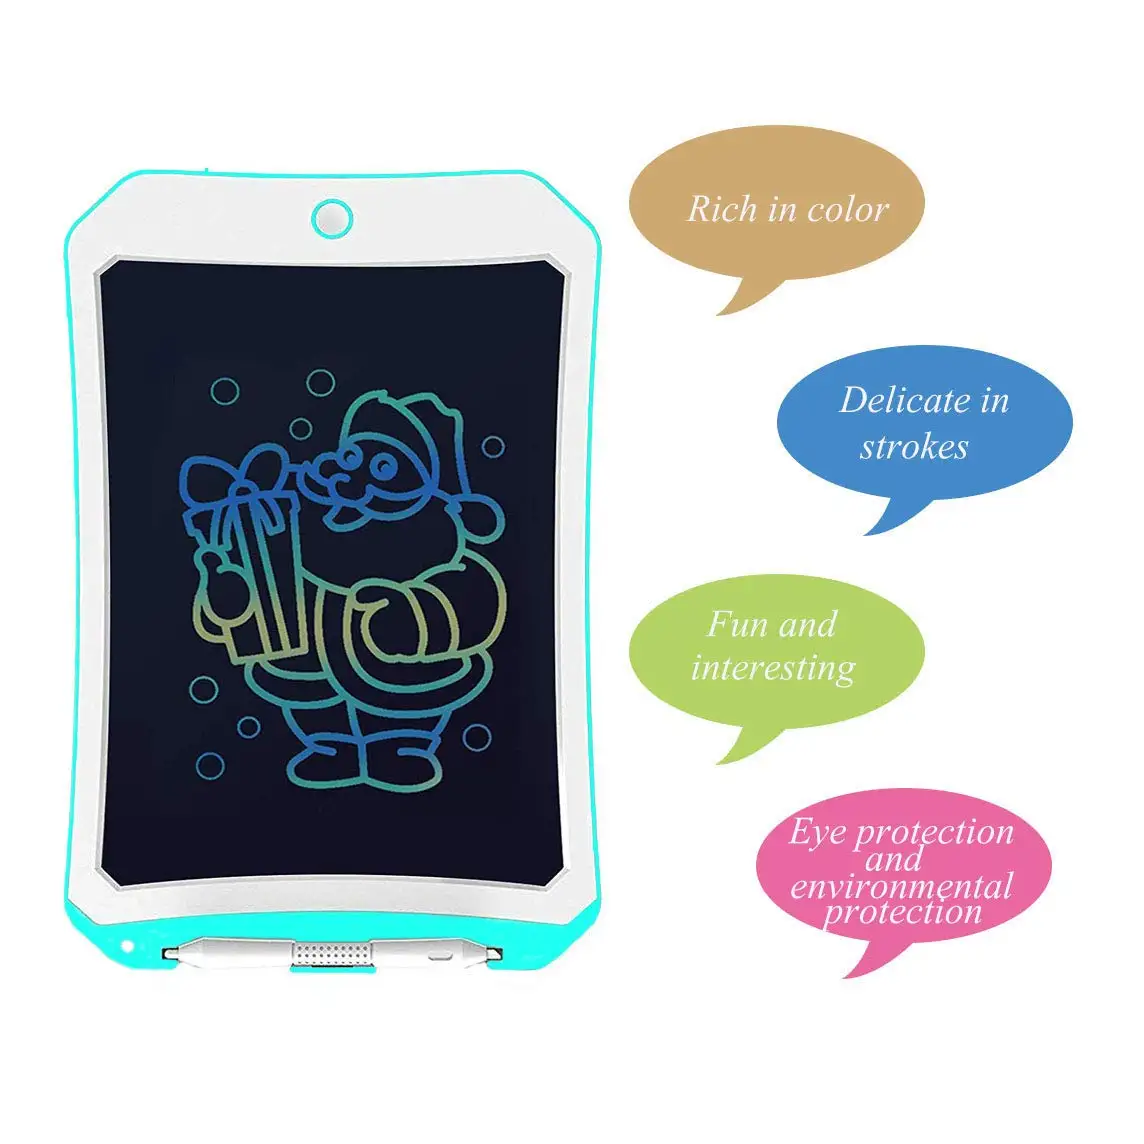 Цветной ЖК-планшет для письма, 8,5 дюймов доска для рисования и письма с кнопкой блокировки стирания для детей и взрослых